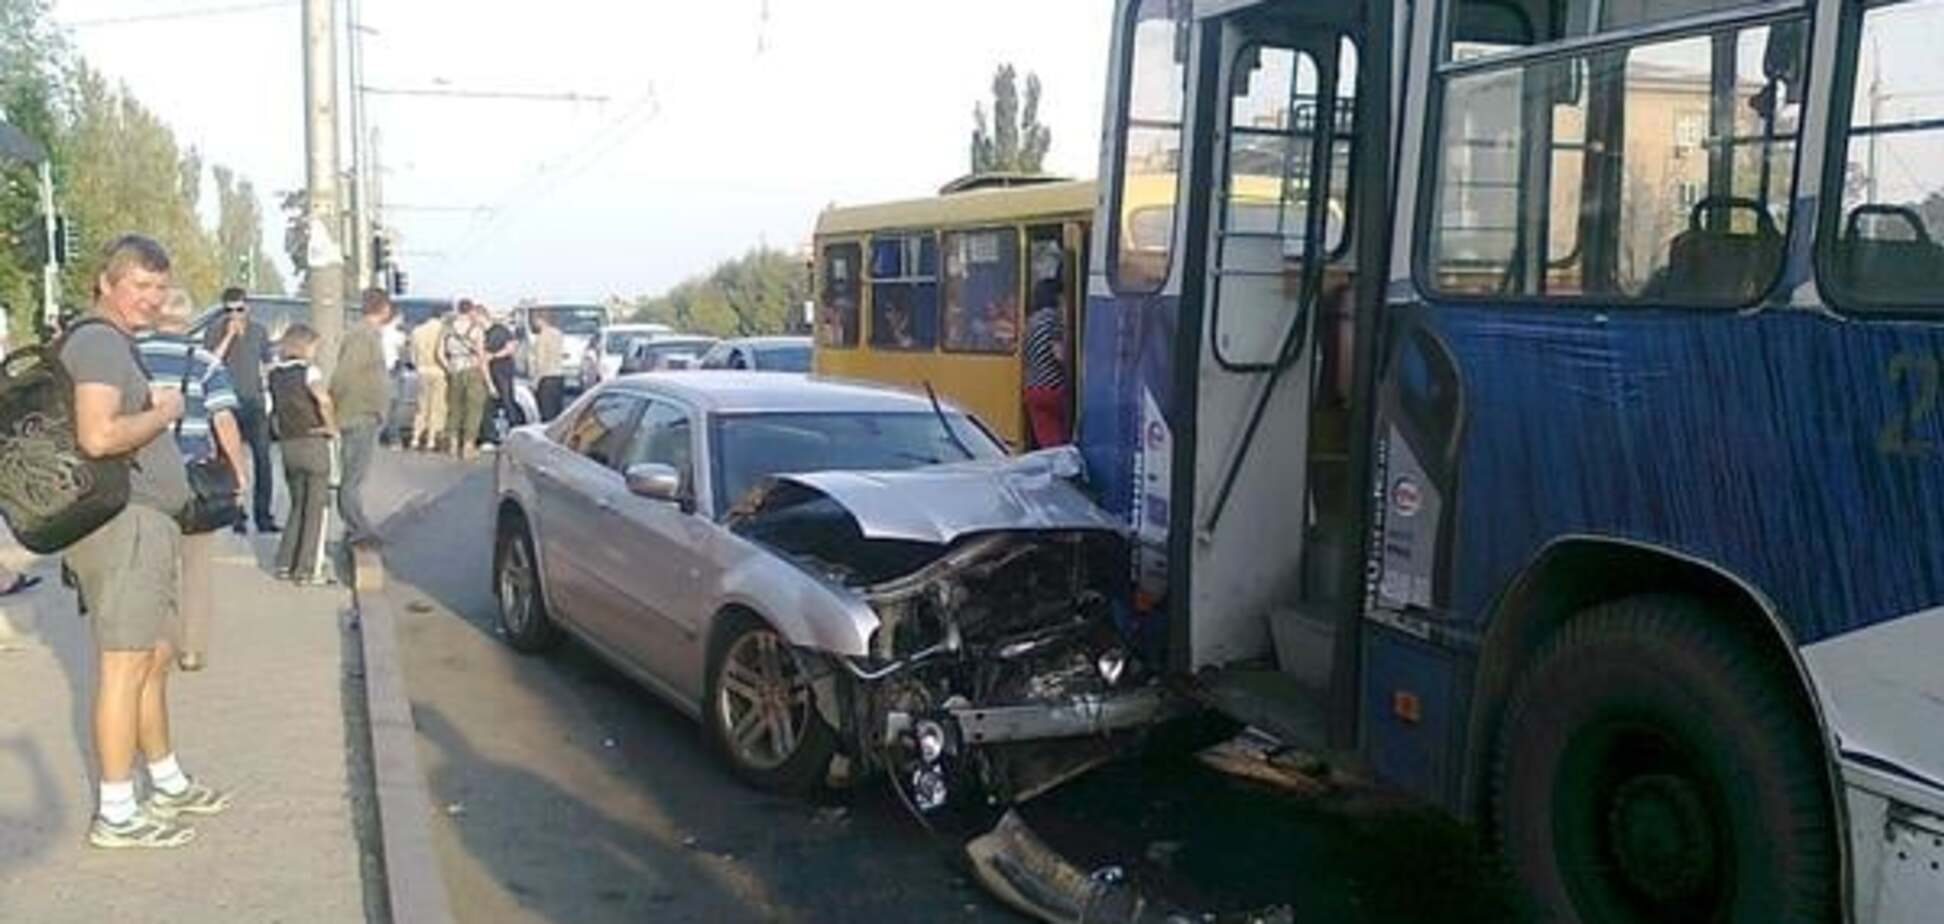 Груды железа: в Донецке террористы на Chrysler перевернули 'девятку' и протаранили троллейбус. Фоторепортаж